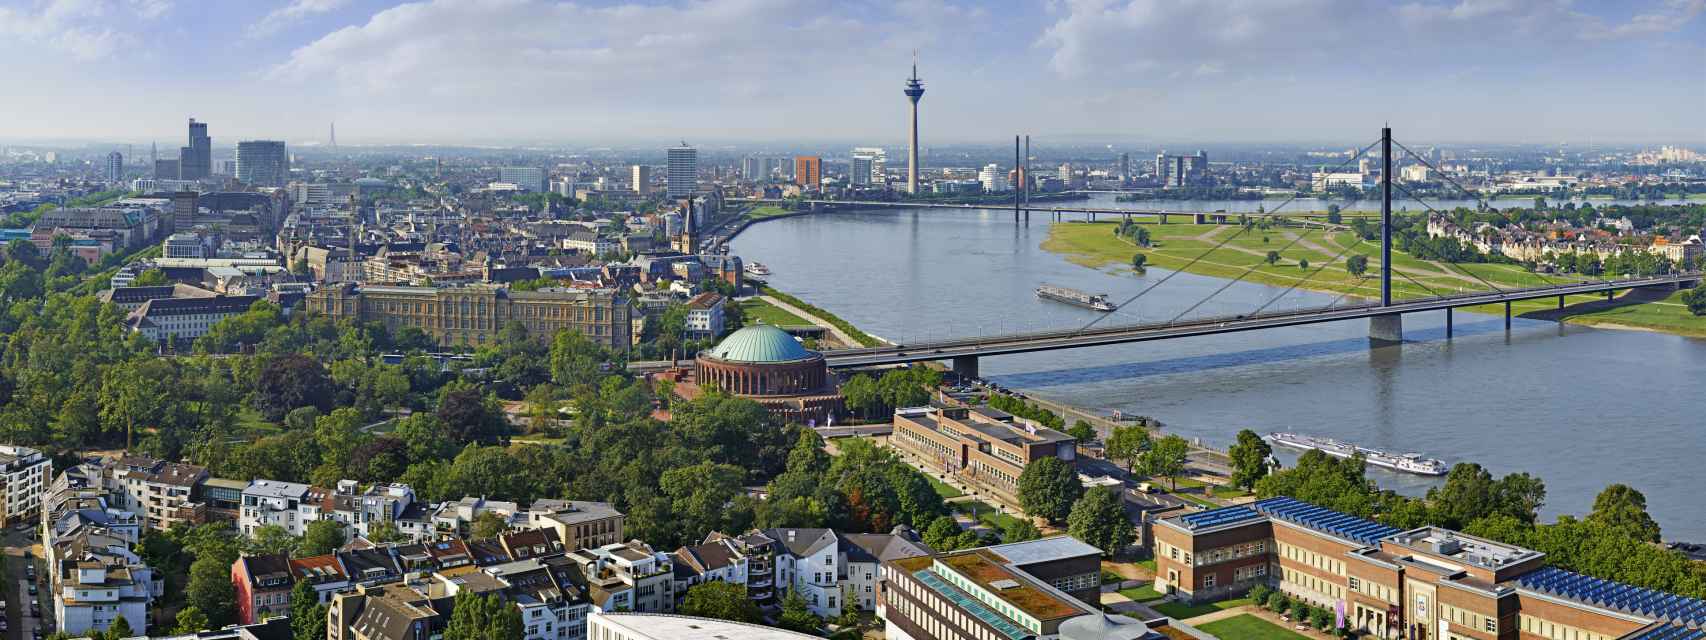 Vista de la ciudad de Düsseldorf, con el río Rin en primer plano.